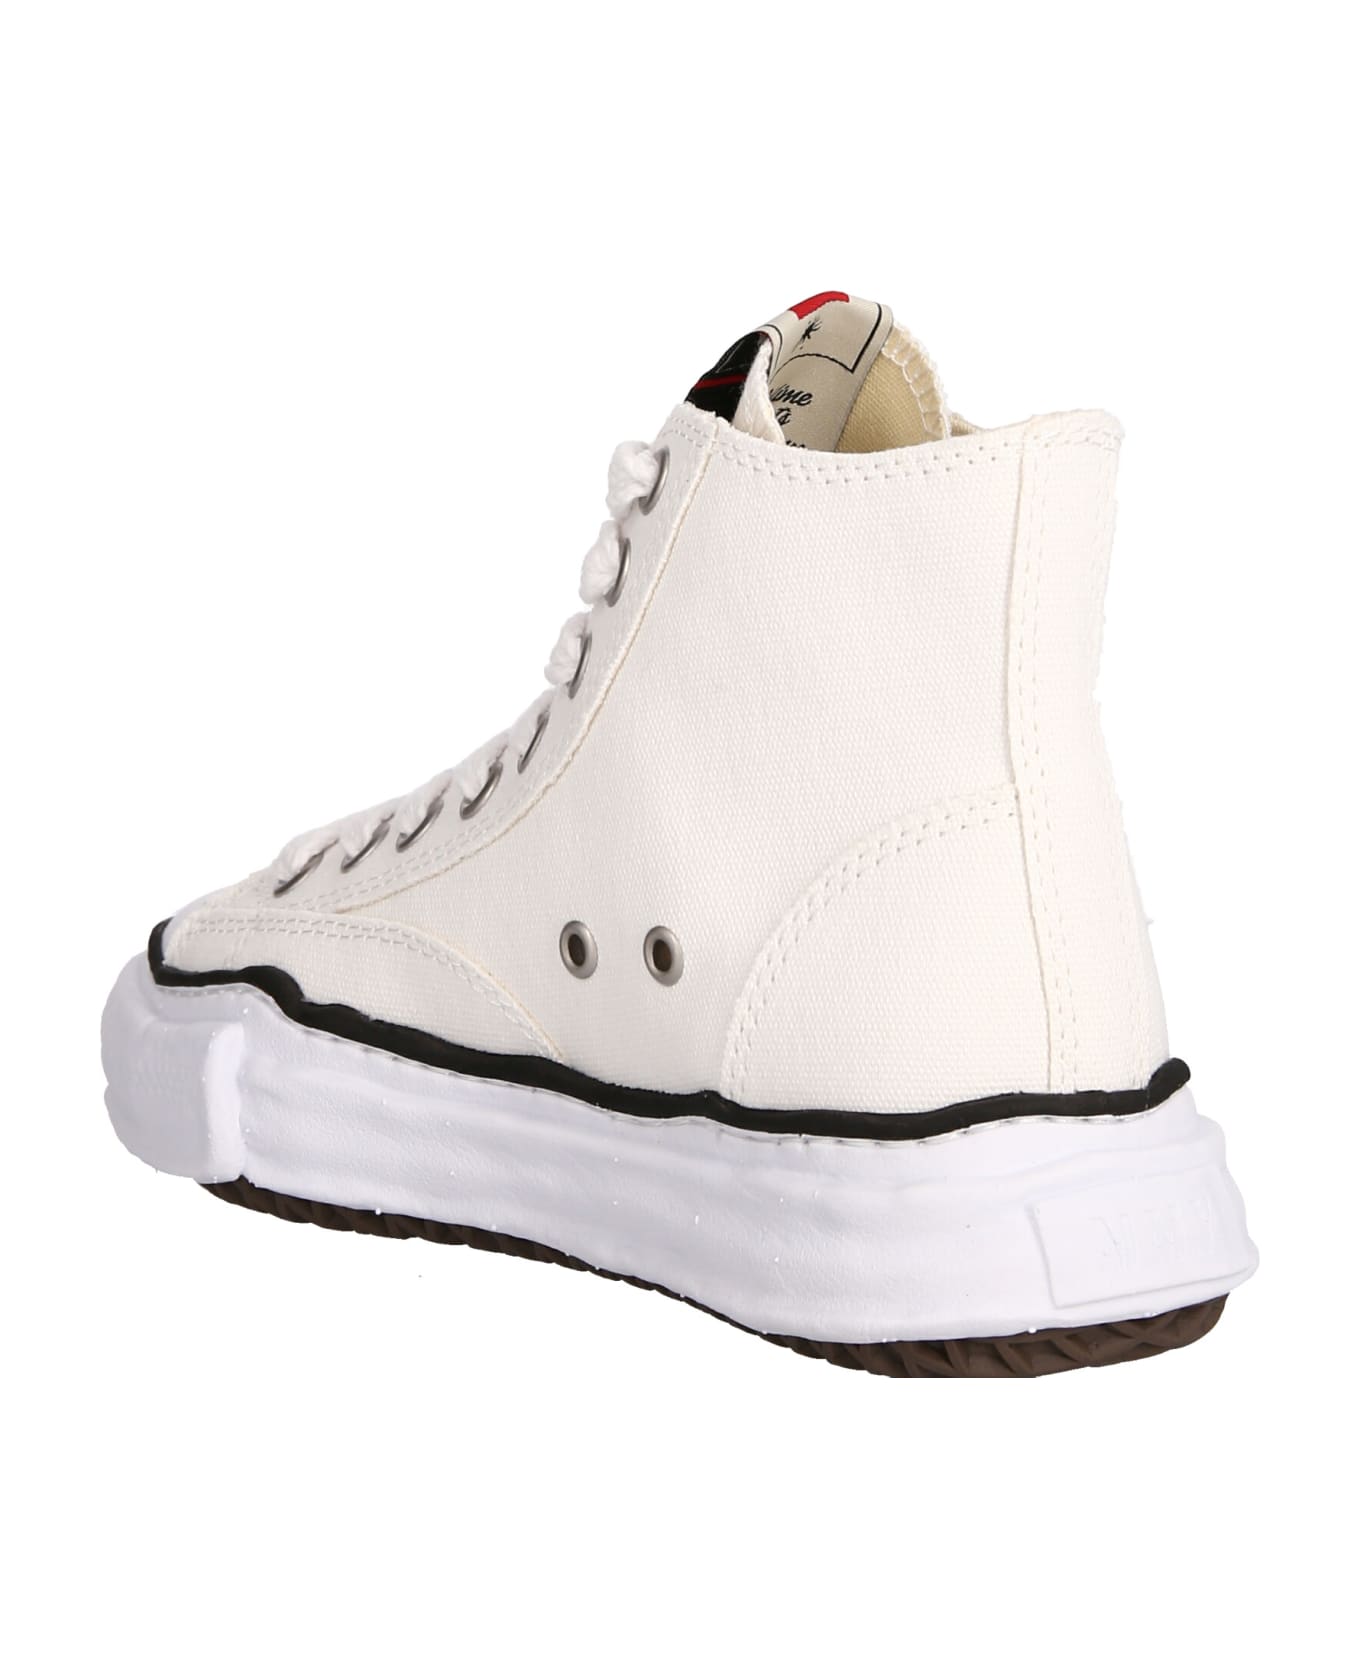 Mihara Yasuhiro 'peterson High' Sneakers - White